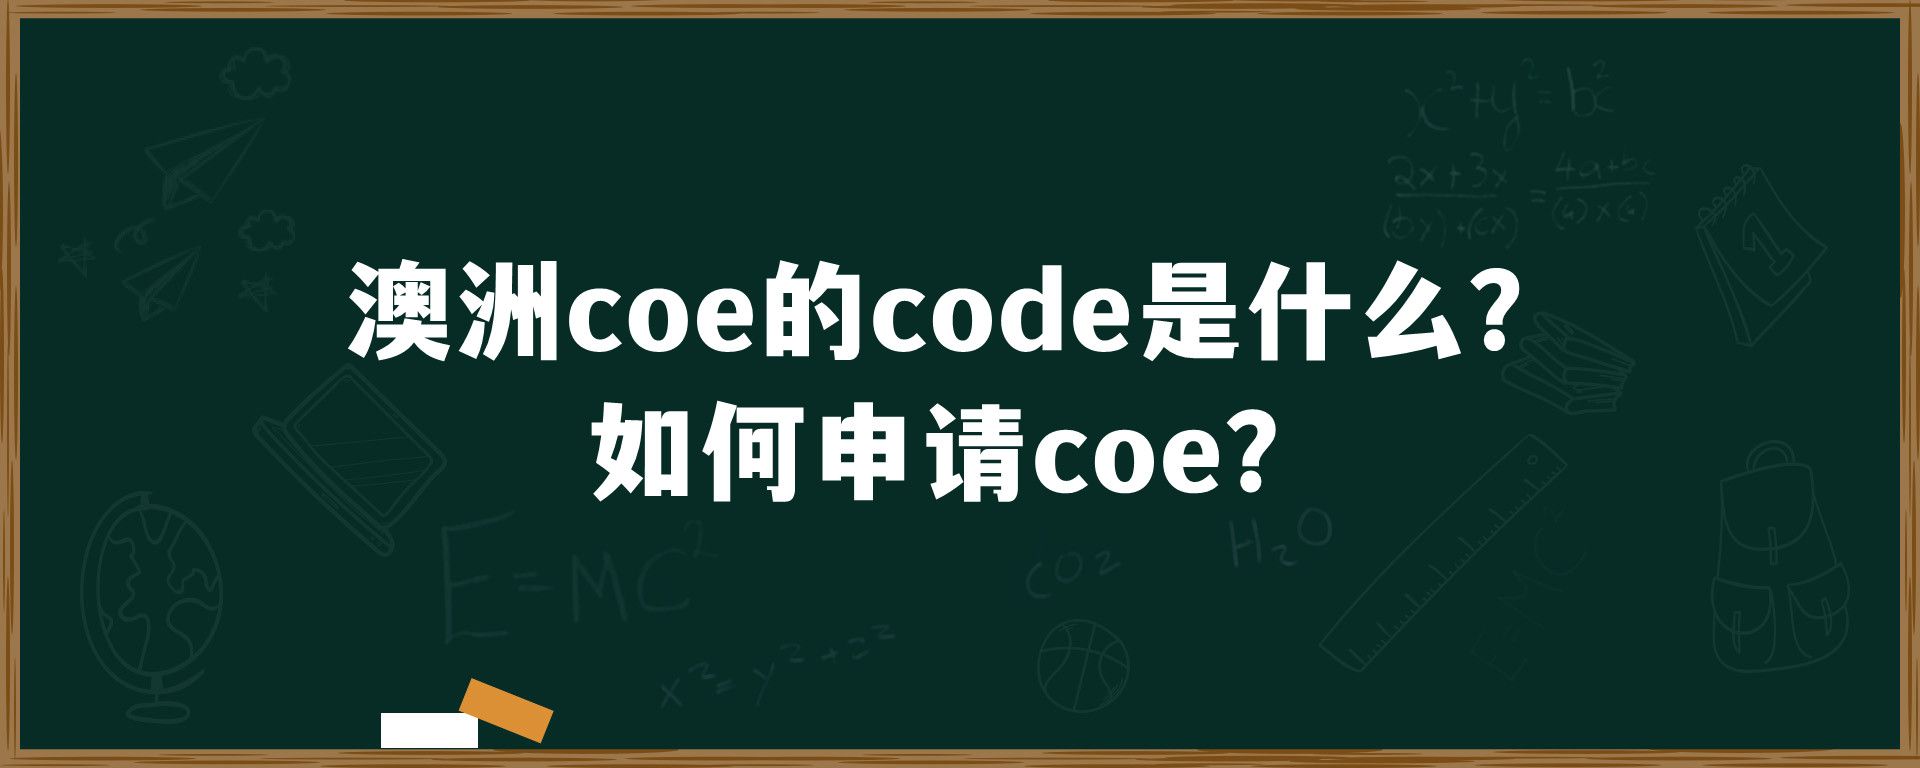 澳洲coe的code是什么？如何申请coe？